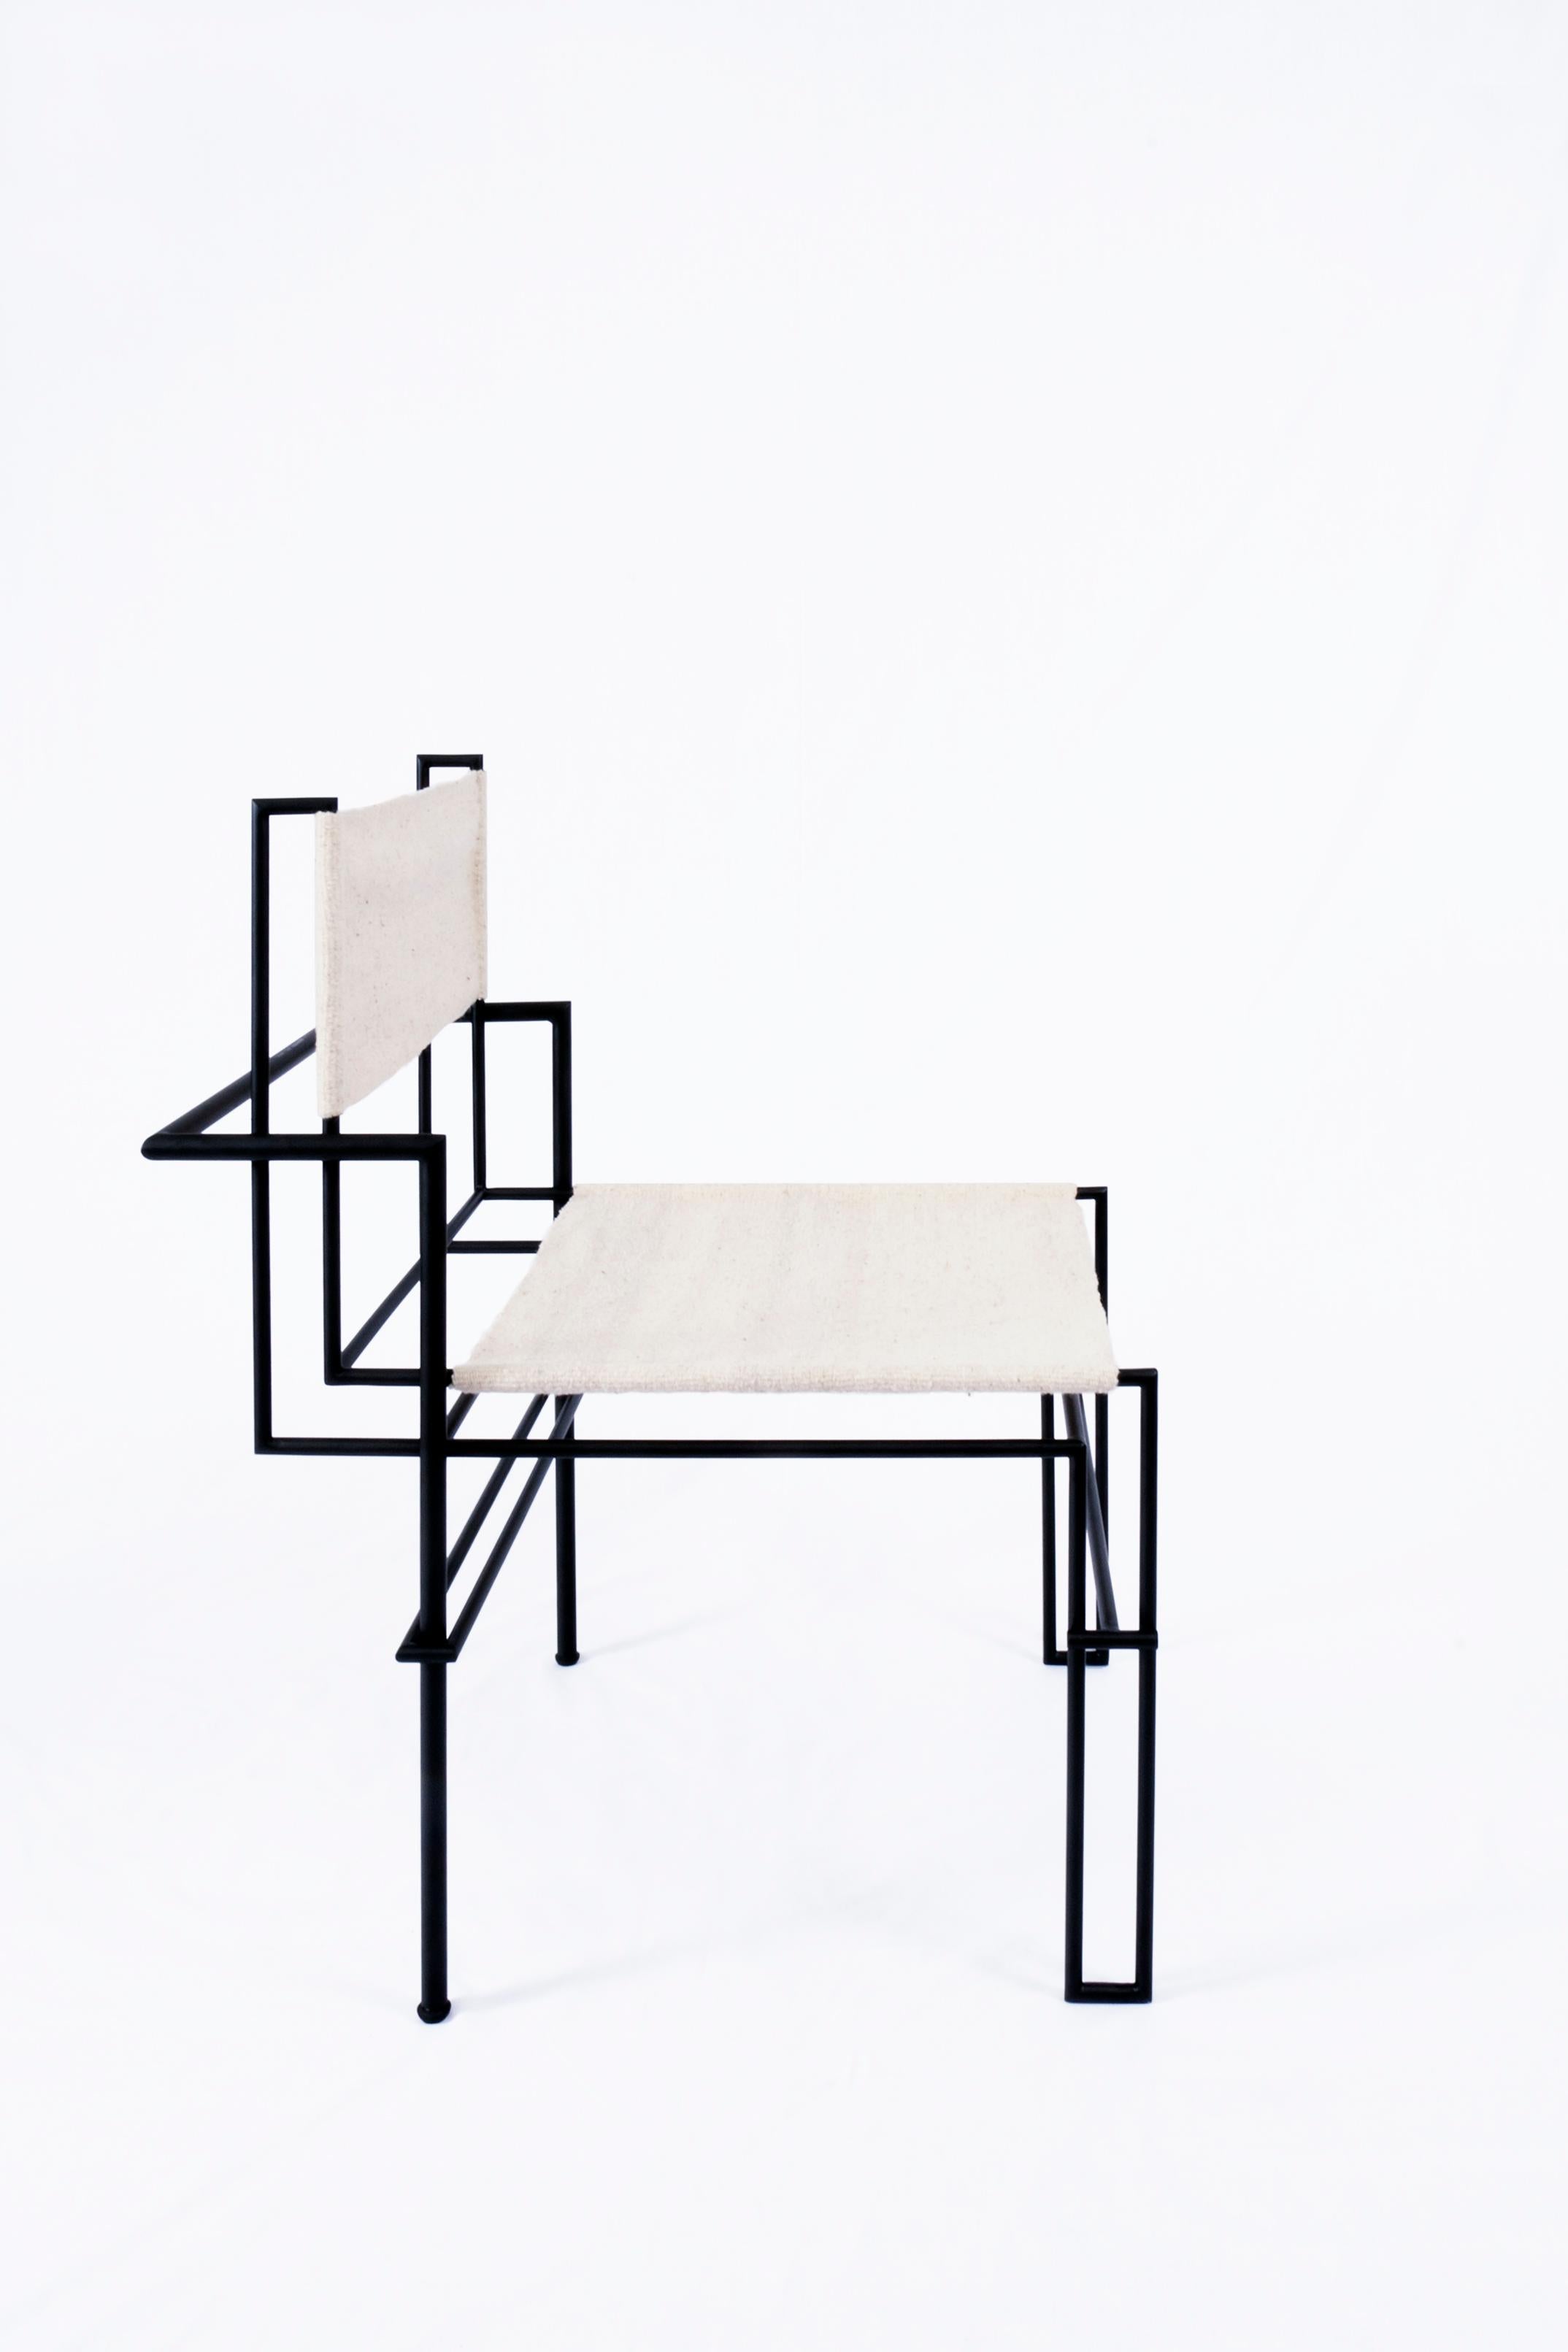 Casbah messing stuhl schwarz von Nomade Atelier
Abmessungen: T94 x B 75 x H107 cm
MATERIAL: Eisen, Leder
Erhältlich in schwarzem oder weißem Leder. Für andere endet.

Der Casbah-Stuhl von Nomade Atelier, inspiriert von den Fotogrammen von Lazlo